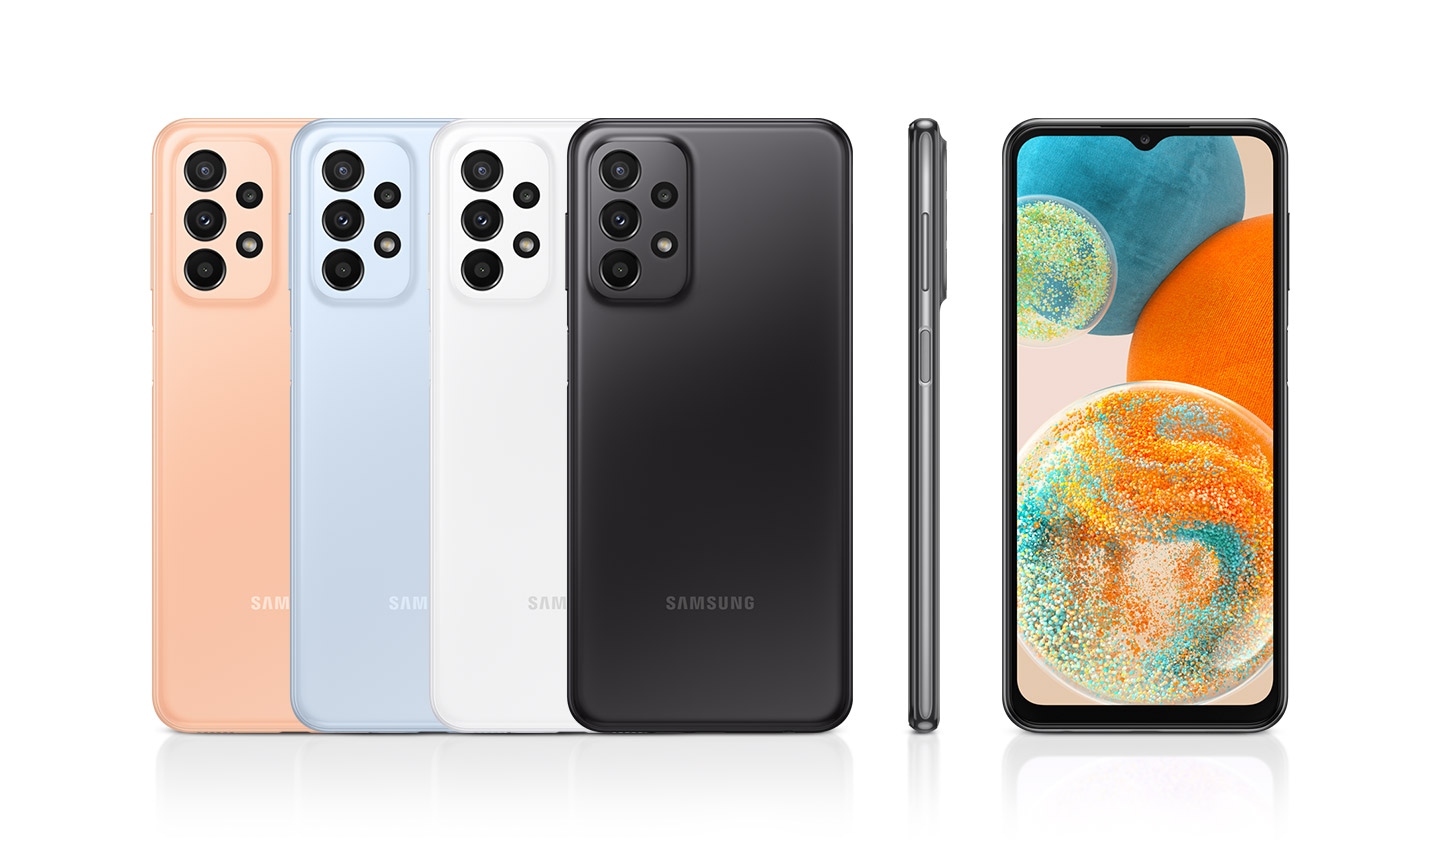 Šest uređaja je prikazano kako bi privukli svoje boje i dizajn. Četiri obrnute su u narančastoj, svijetloplavoj, bijeloj i crnoj boji dok jedan gleda prema naprijed, a drugi prikazuje desnu stranu uređaja.